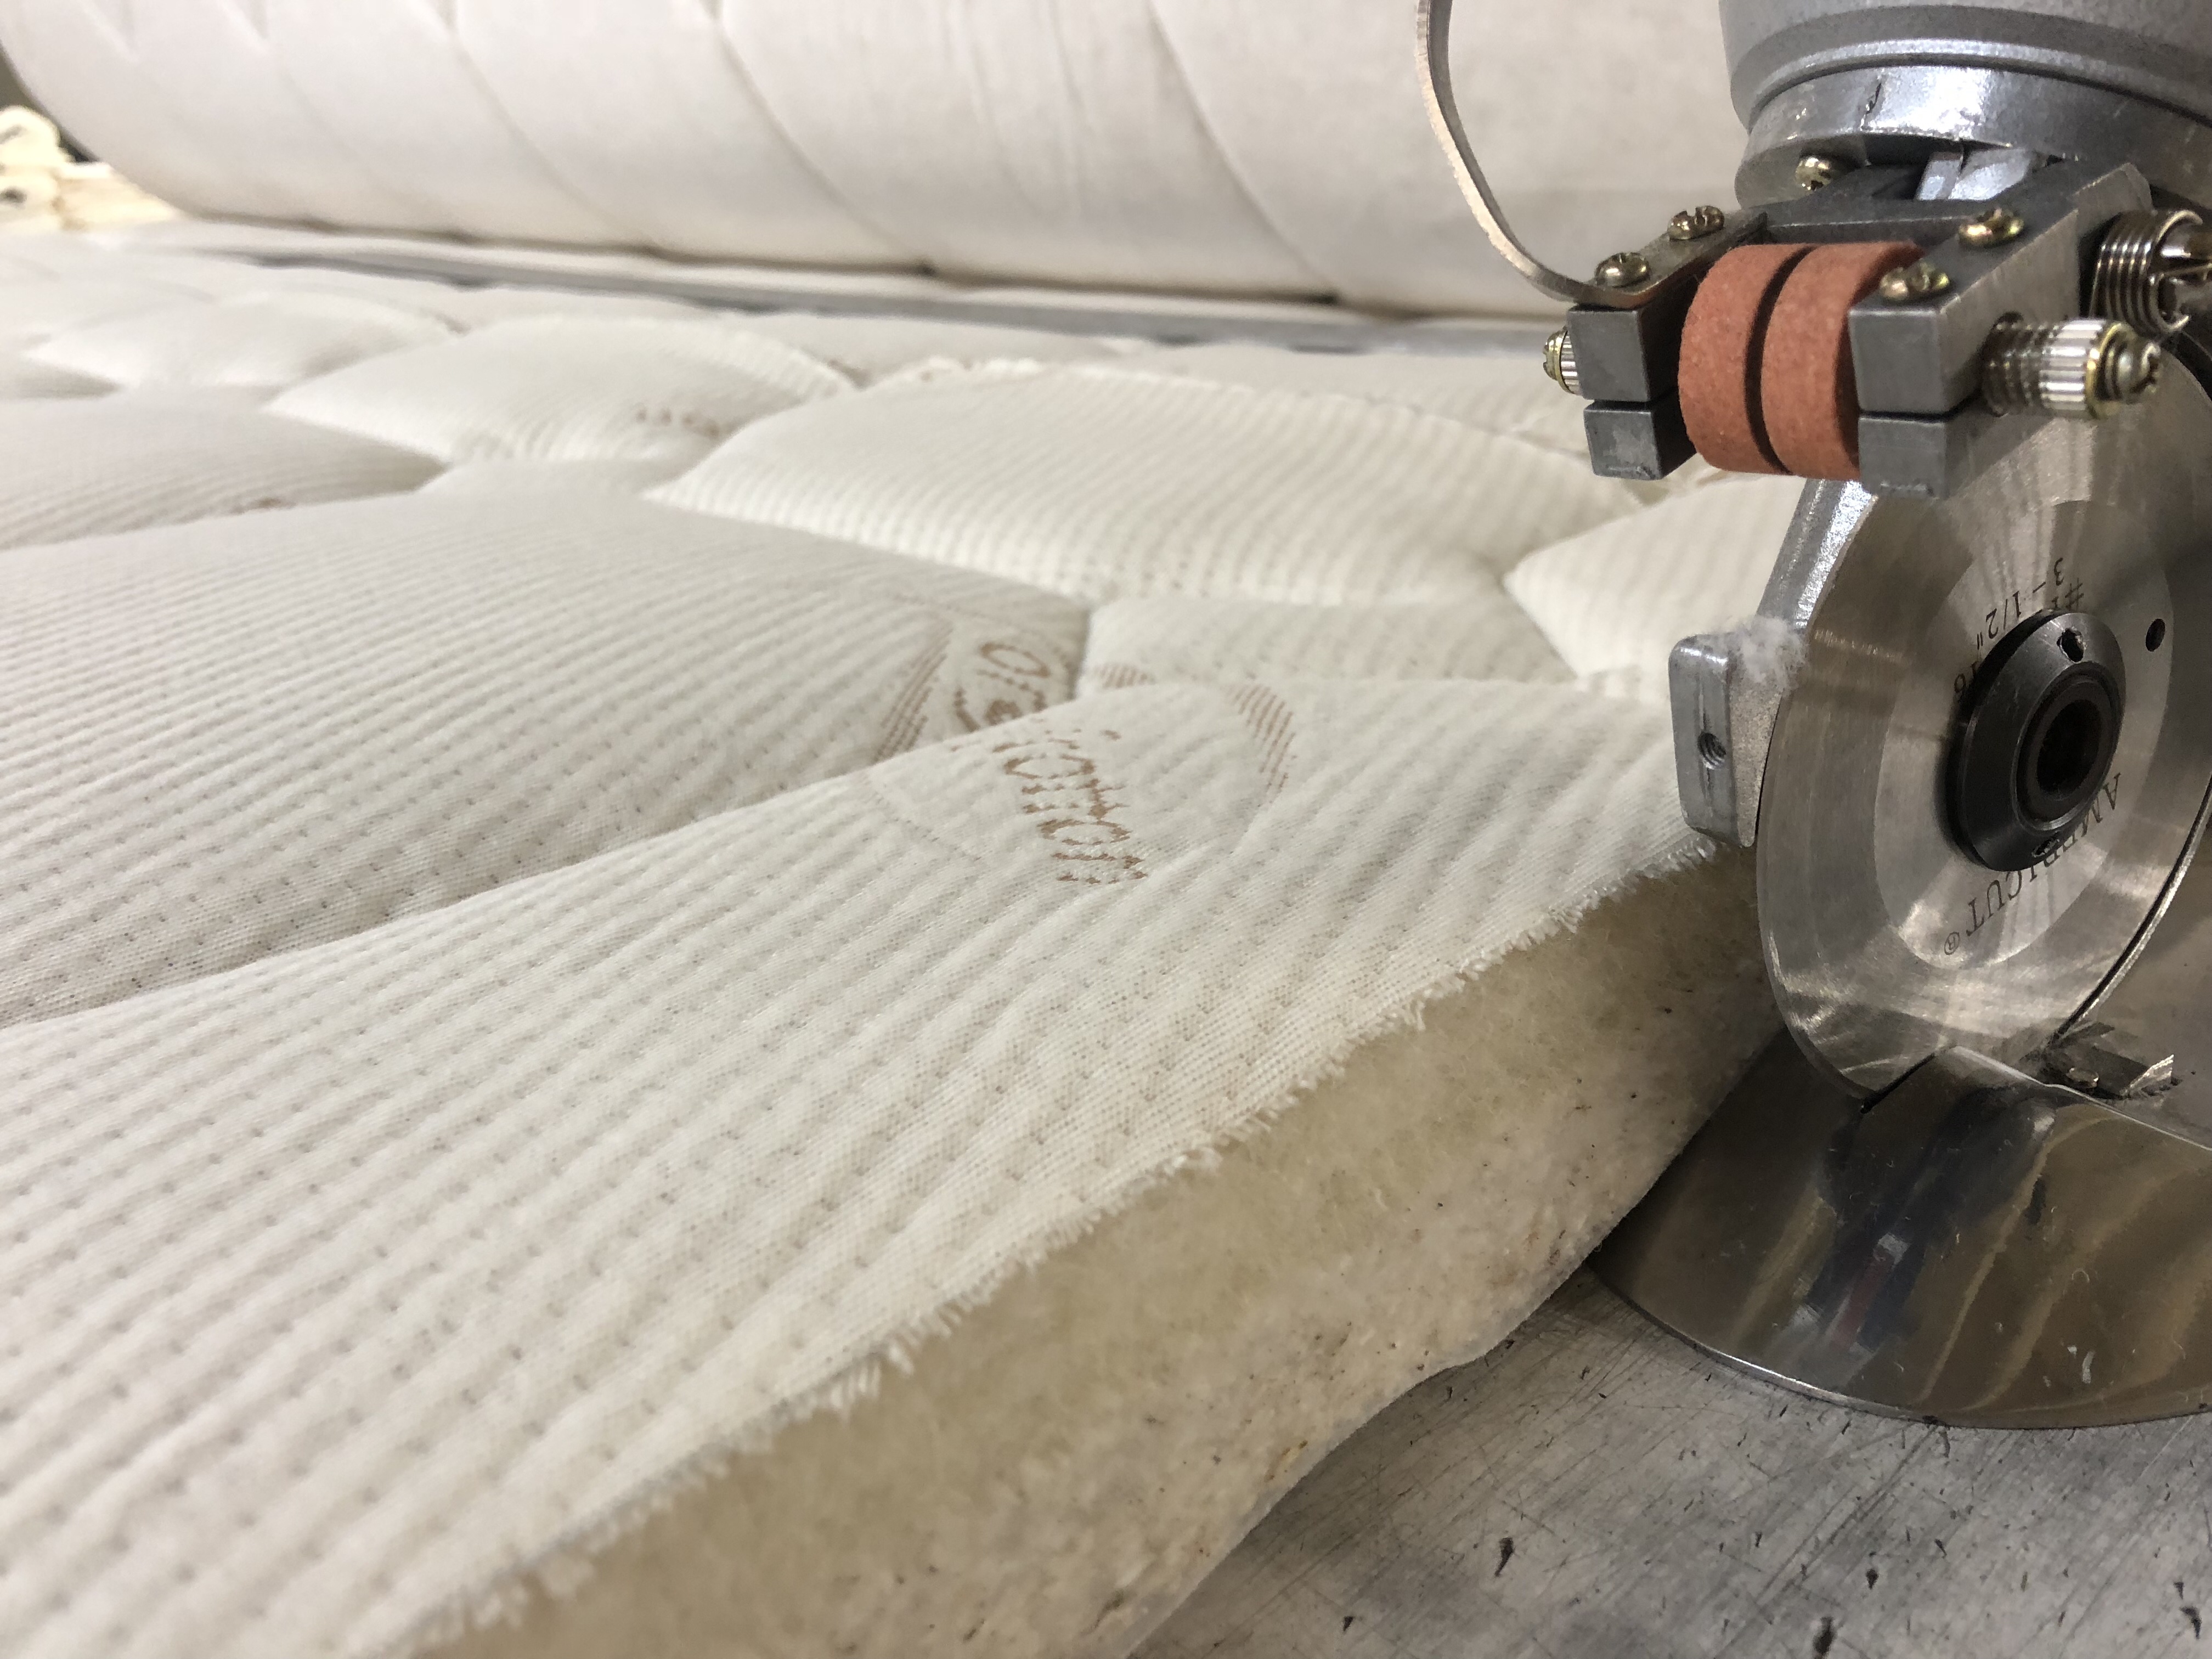 spring pedic mattress factory tucson